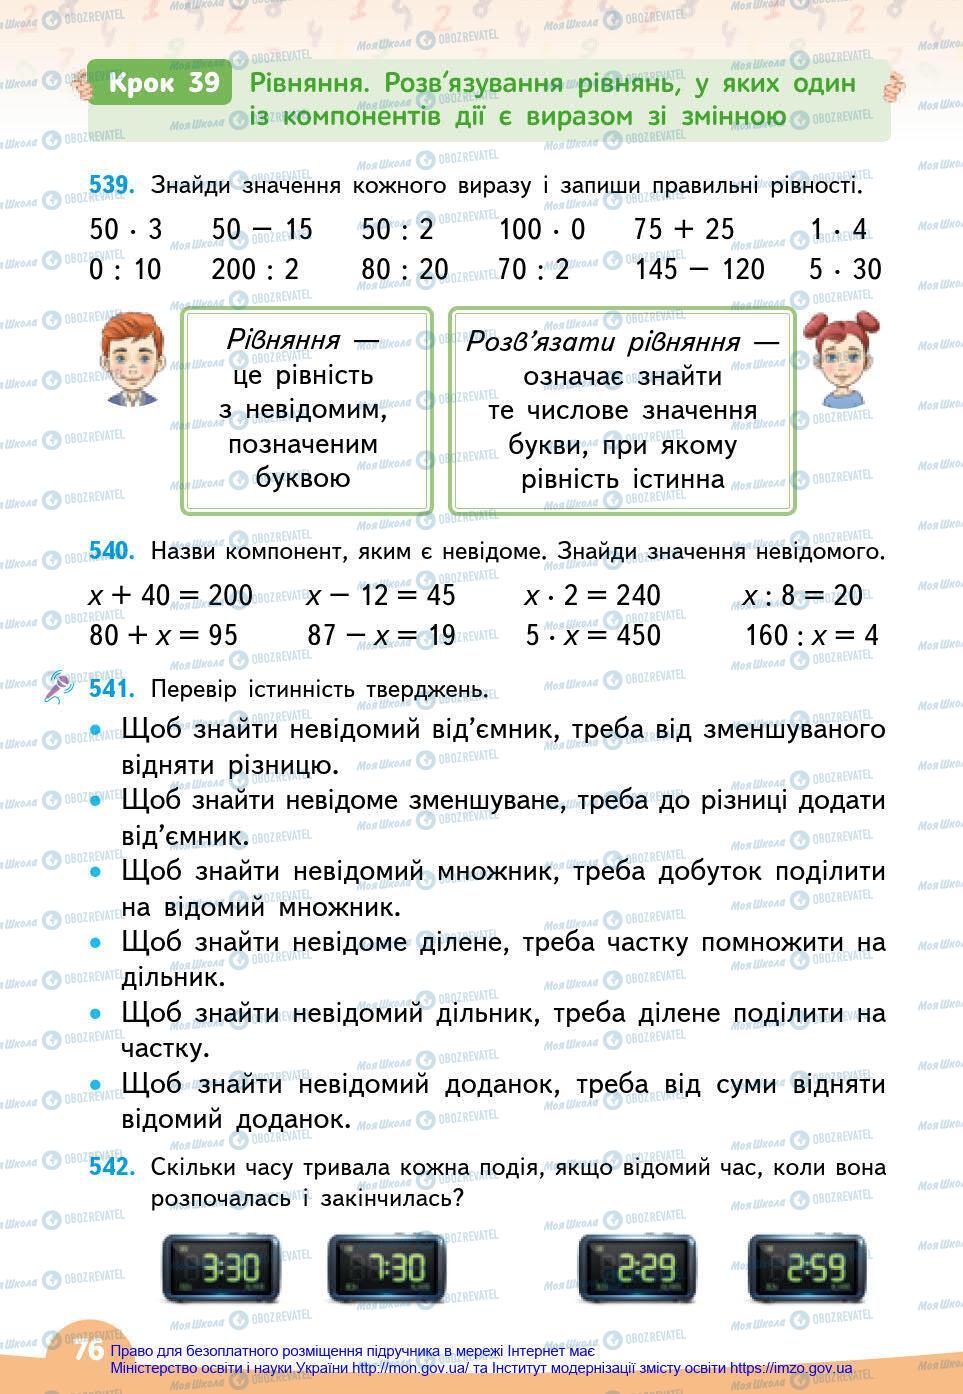 Підручники Математика 3 клас сторінка 76